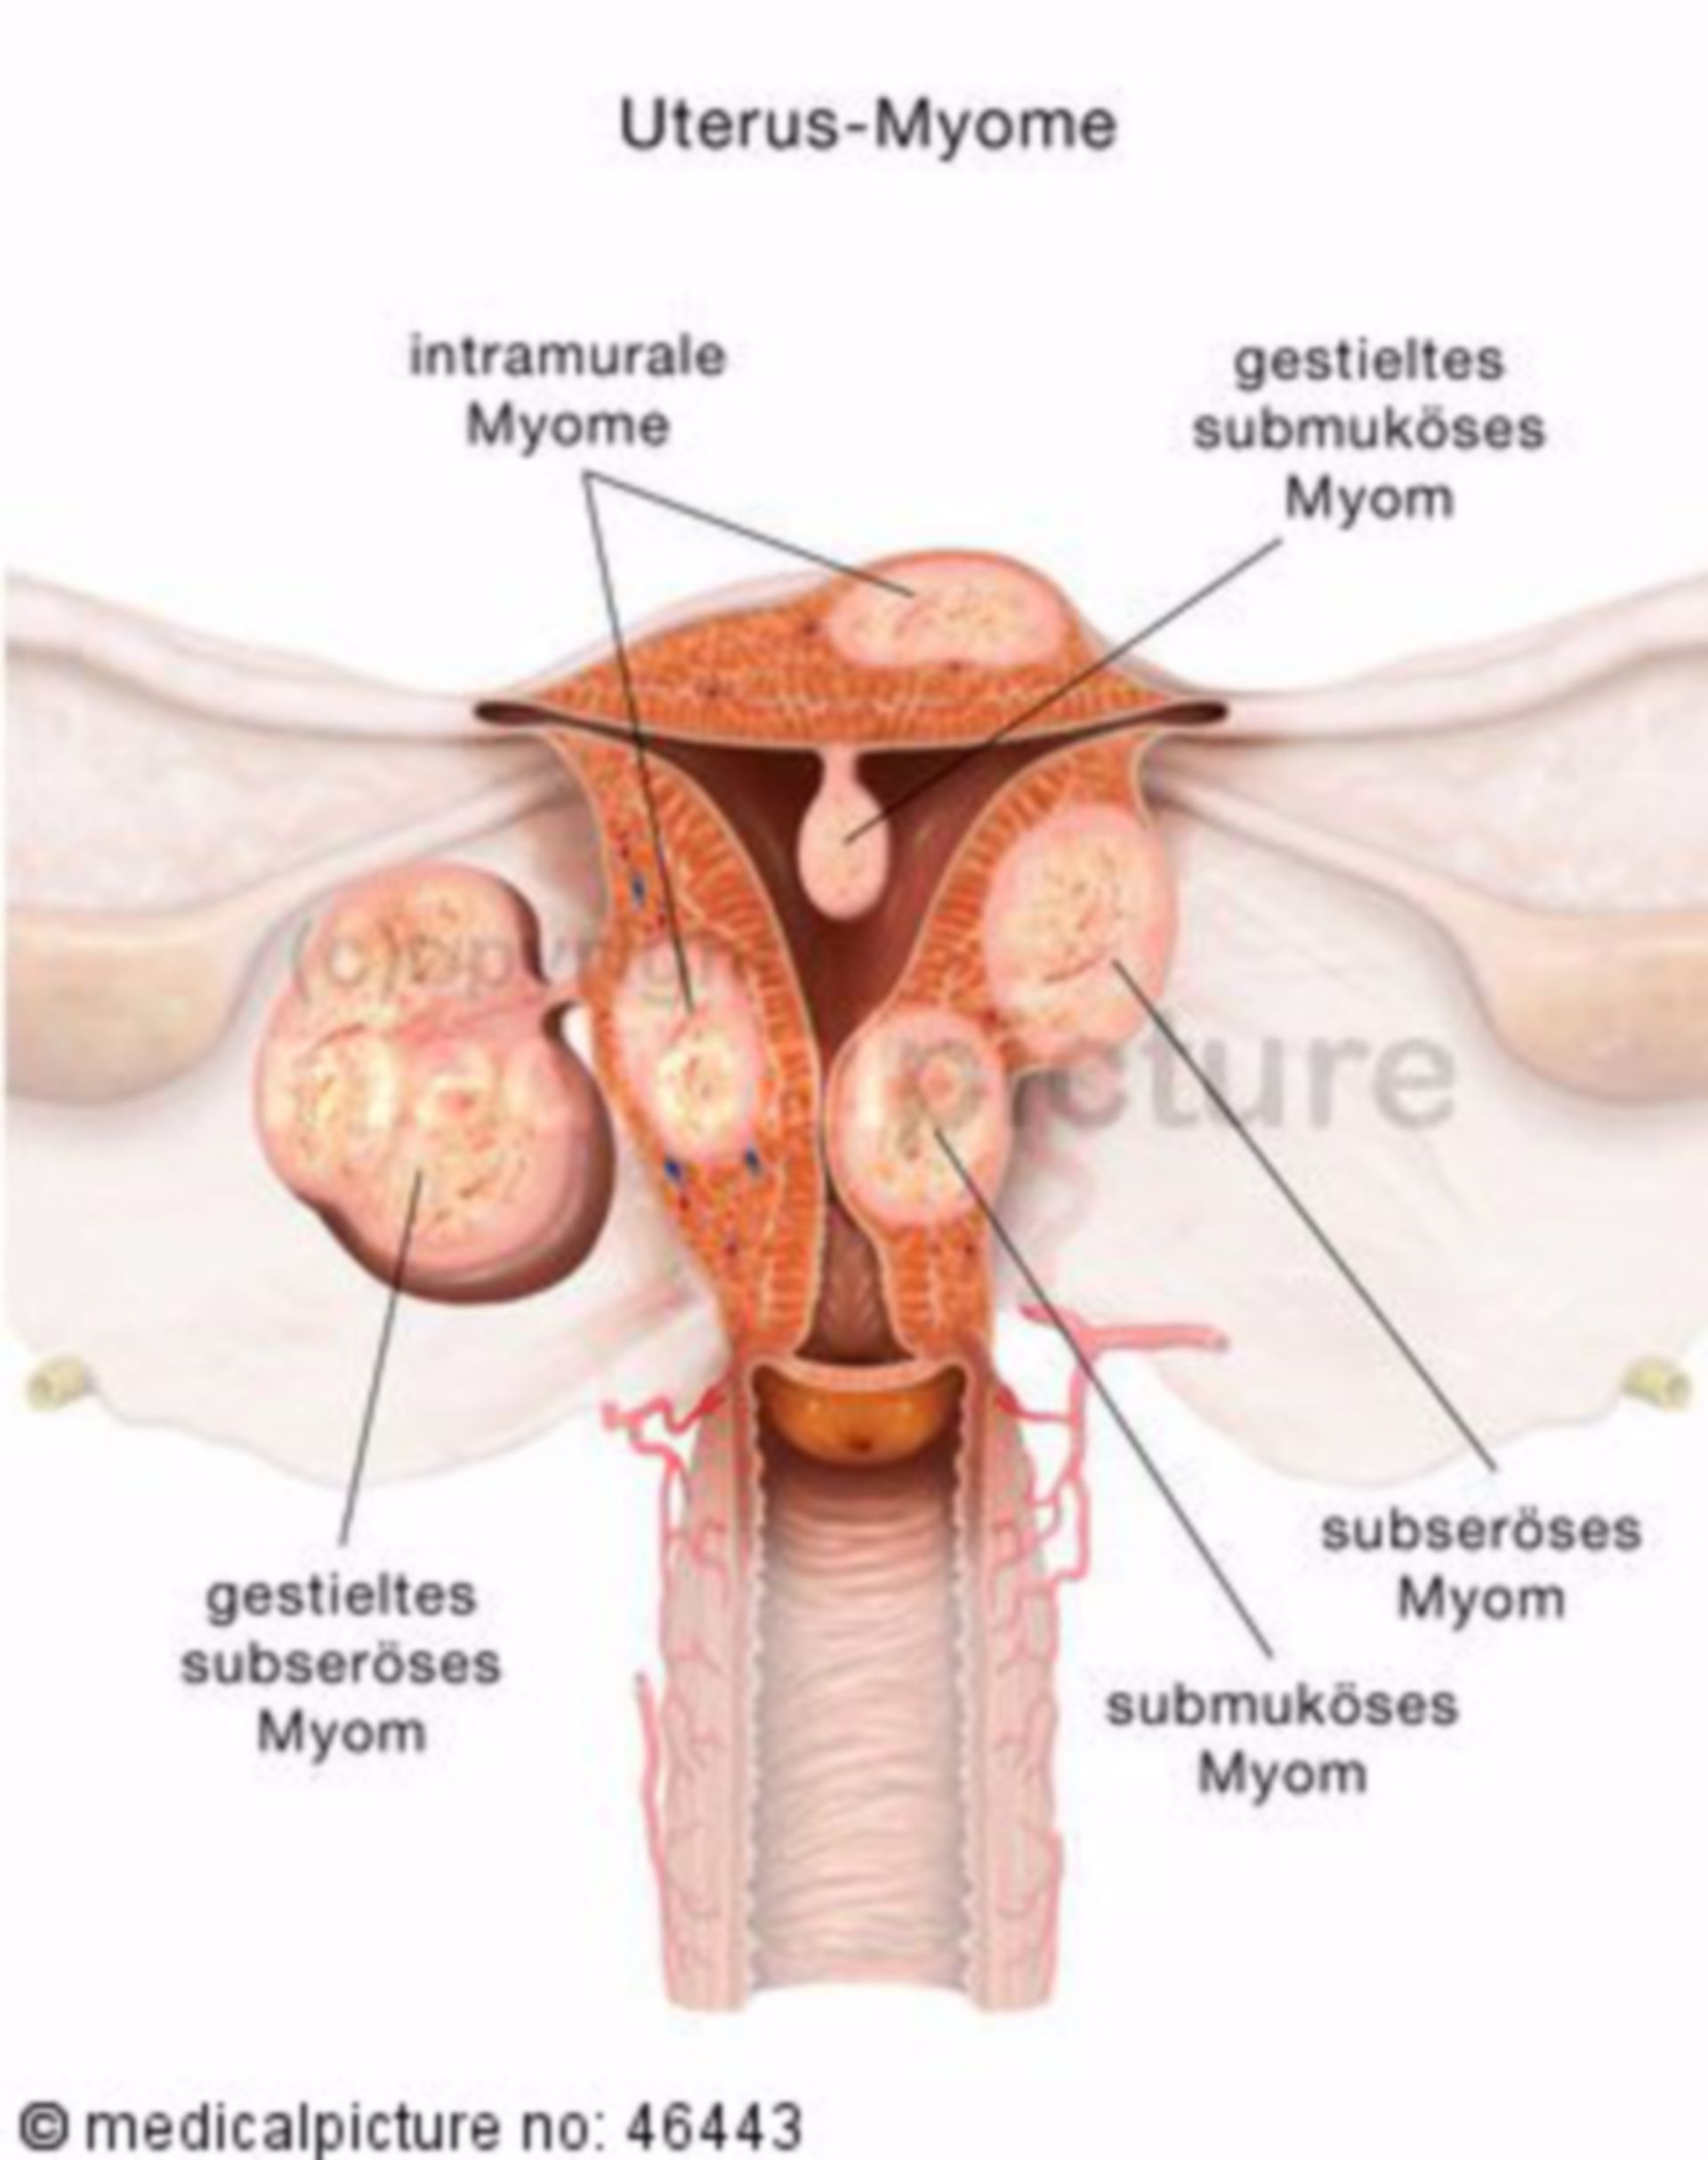 Arten von Uterus-Myomen